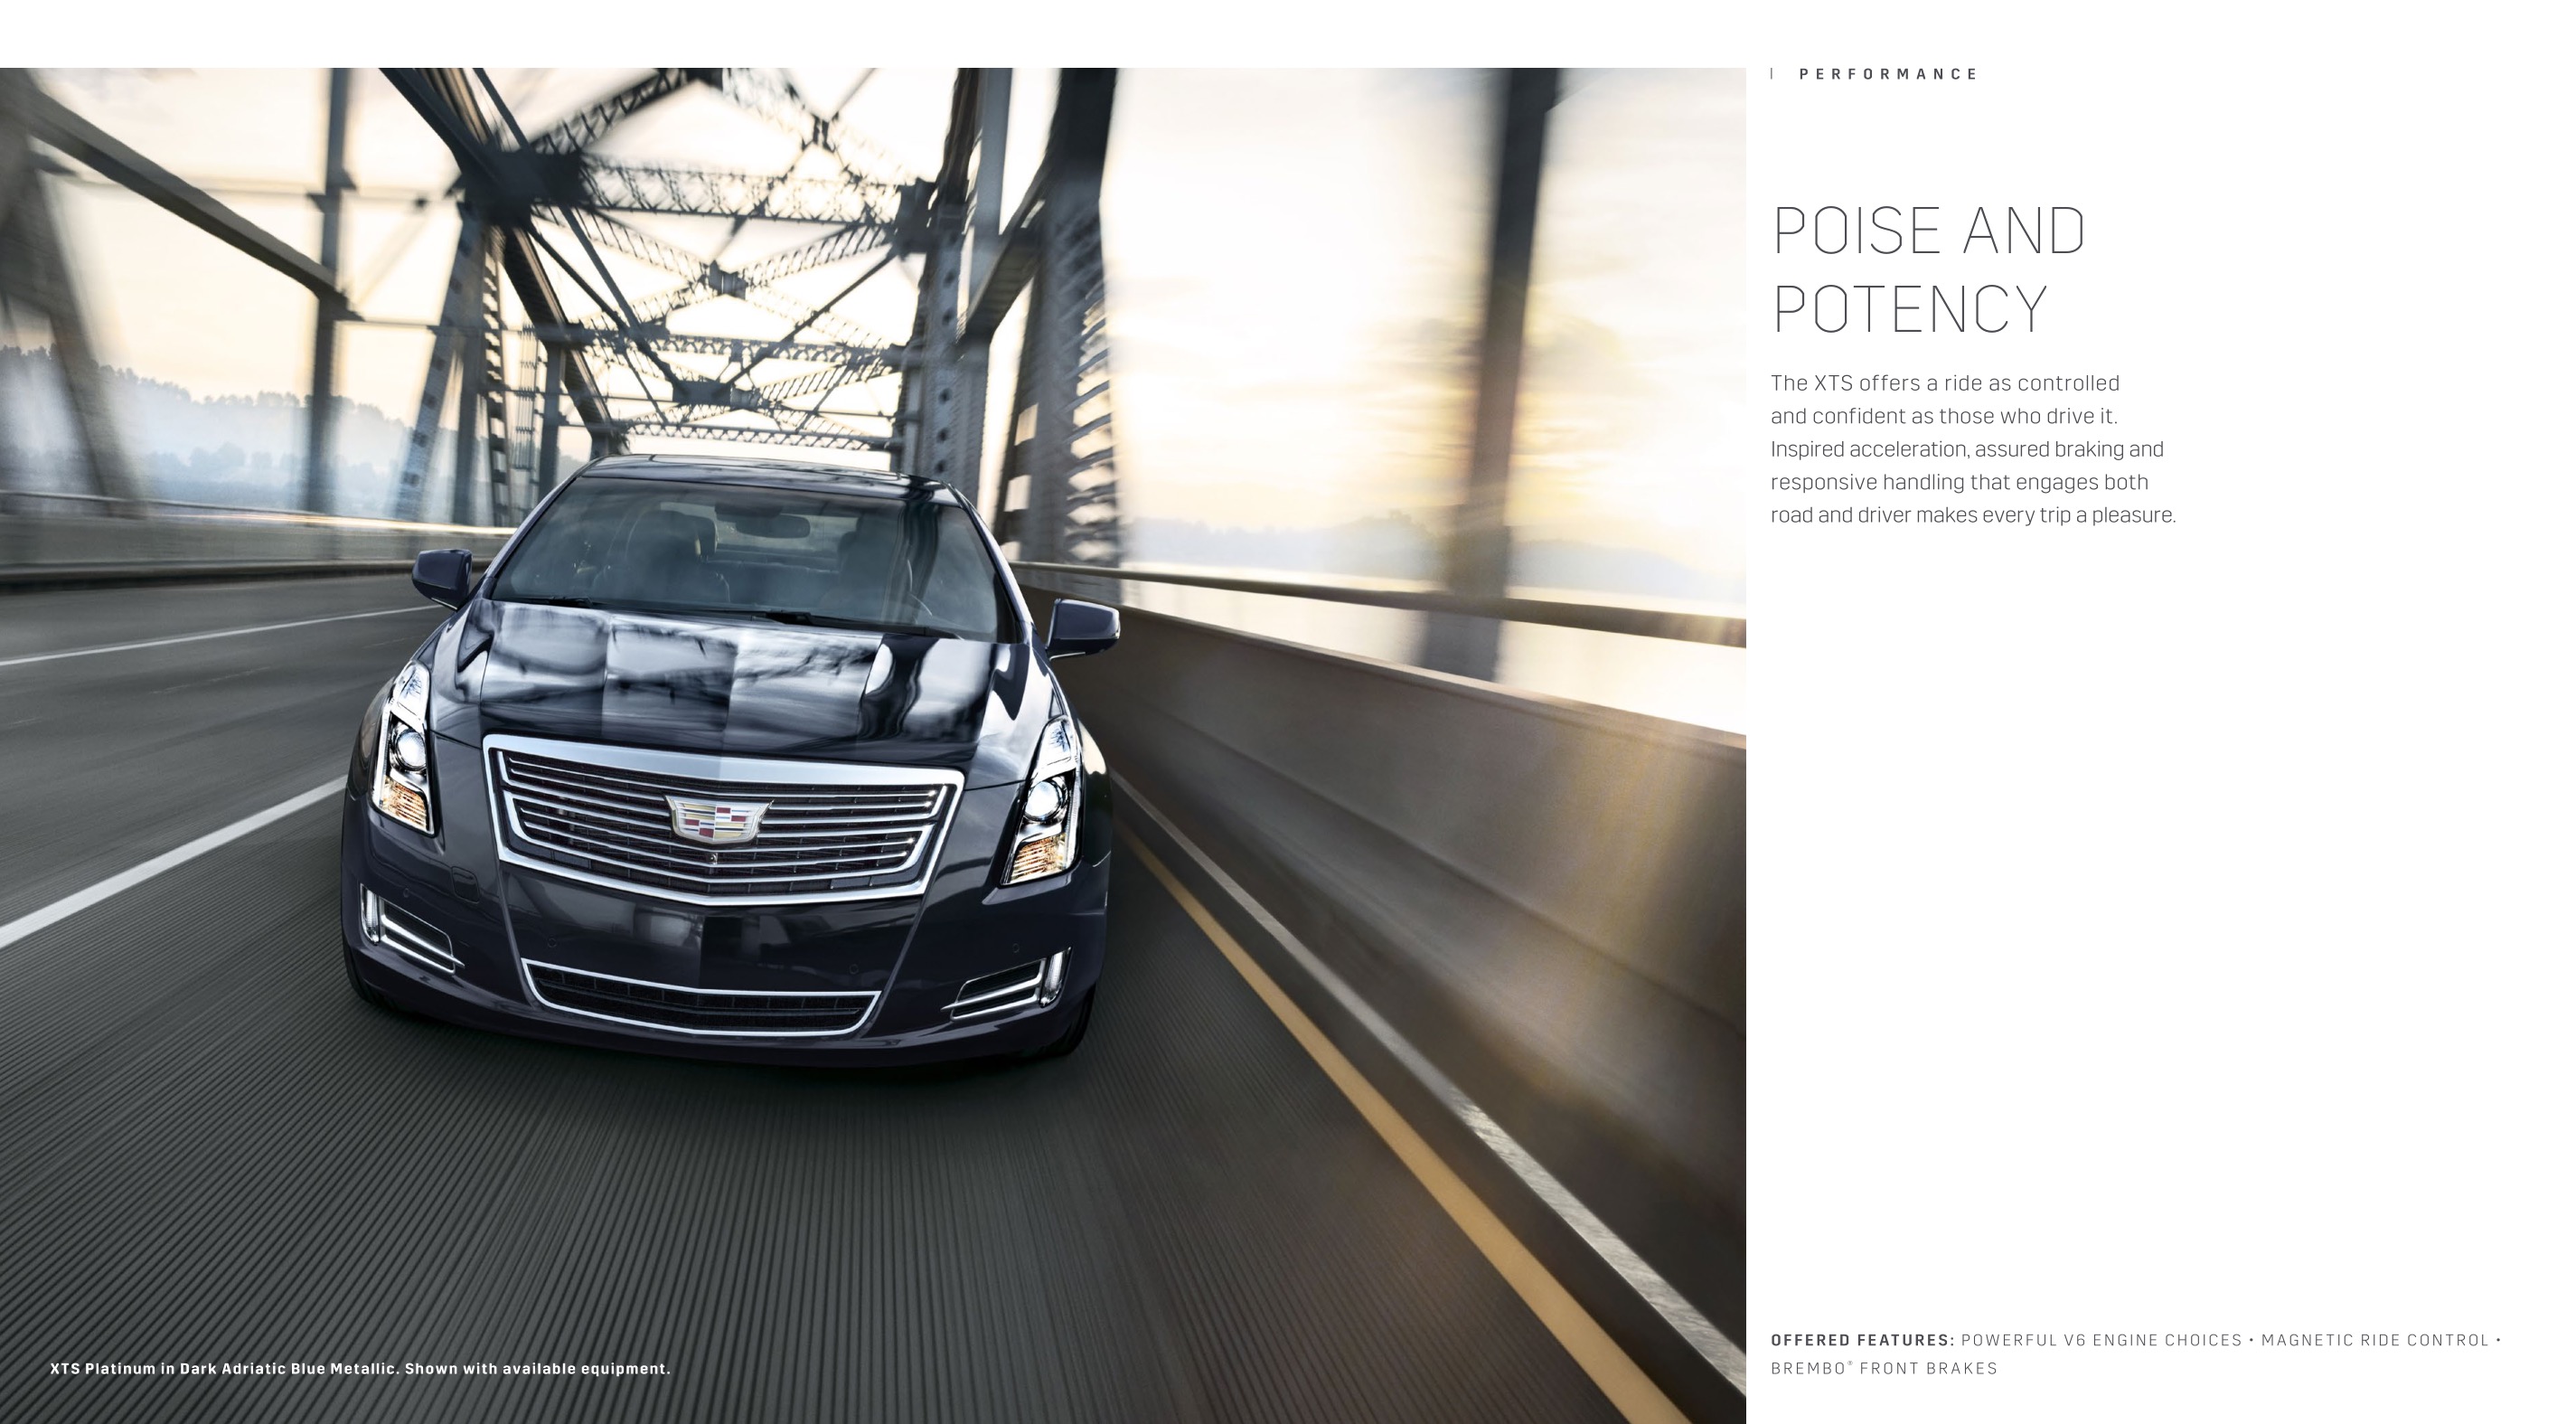 2017 Cadillac XTS Brochure Page 2